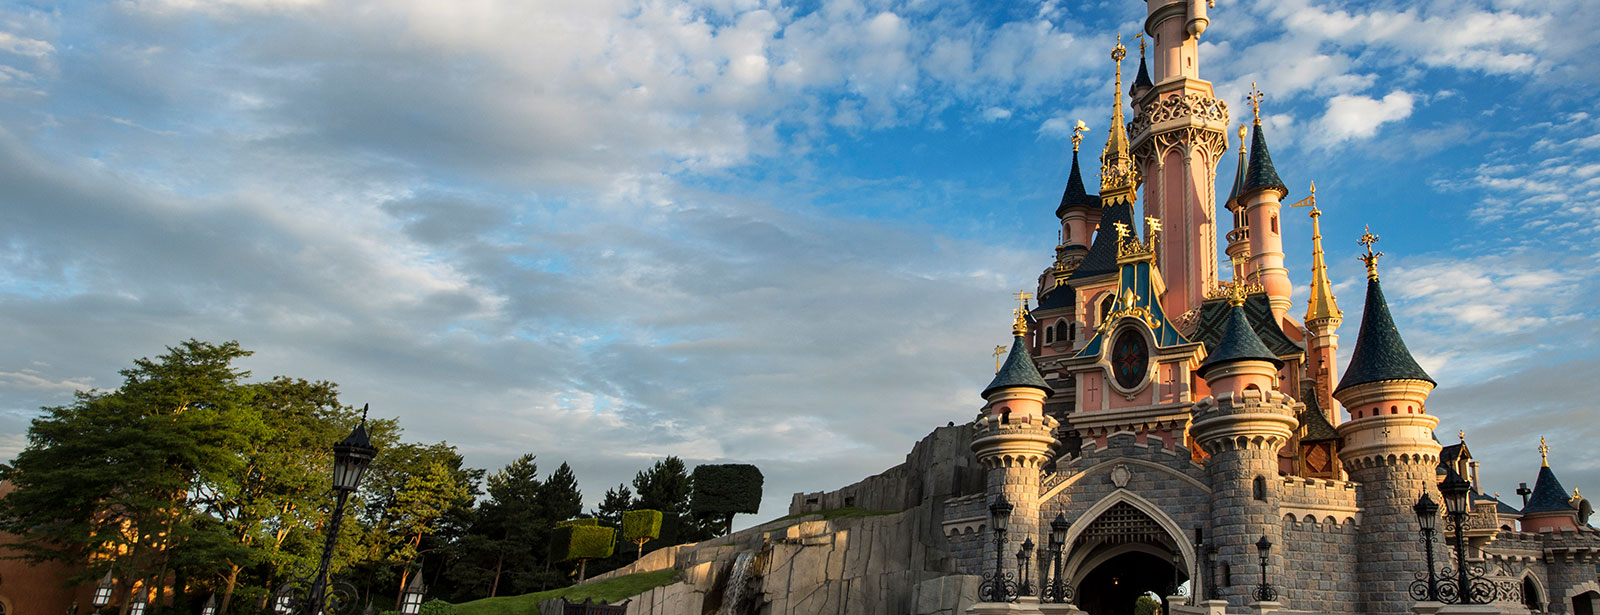 20 häufig gestellte Fragen, die Ihr kennen solltet, bevor Ihr Disneyland® Paris besucht